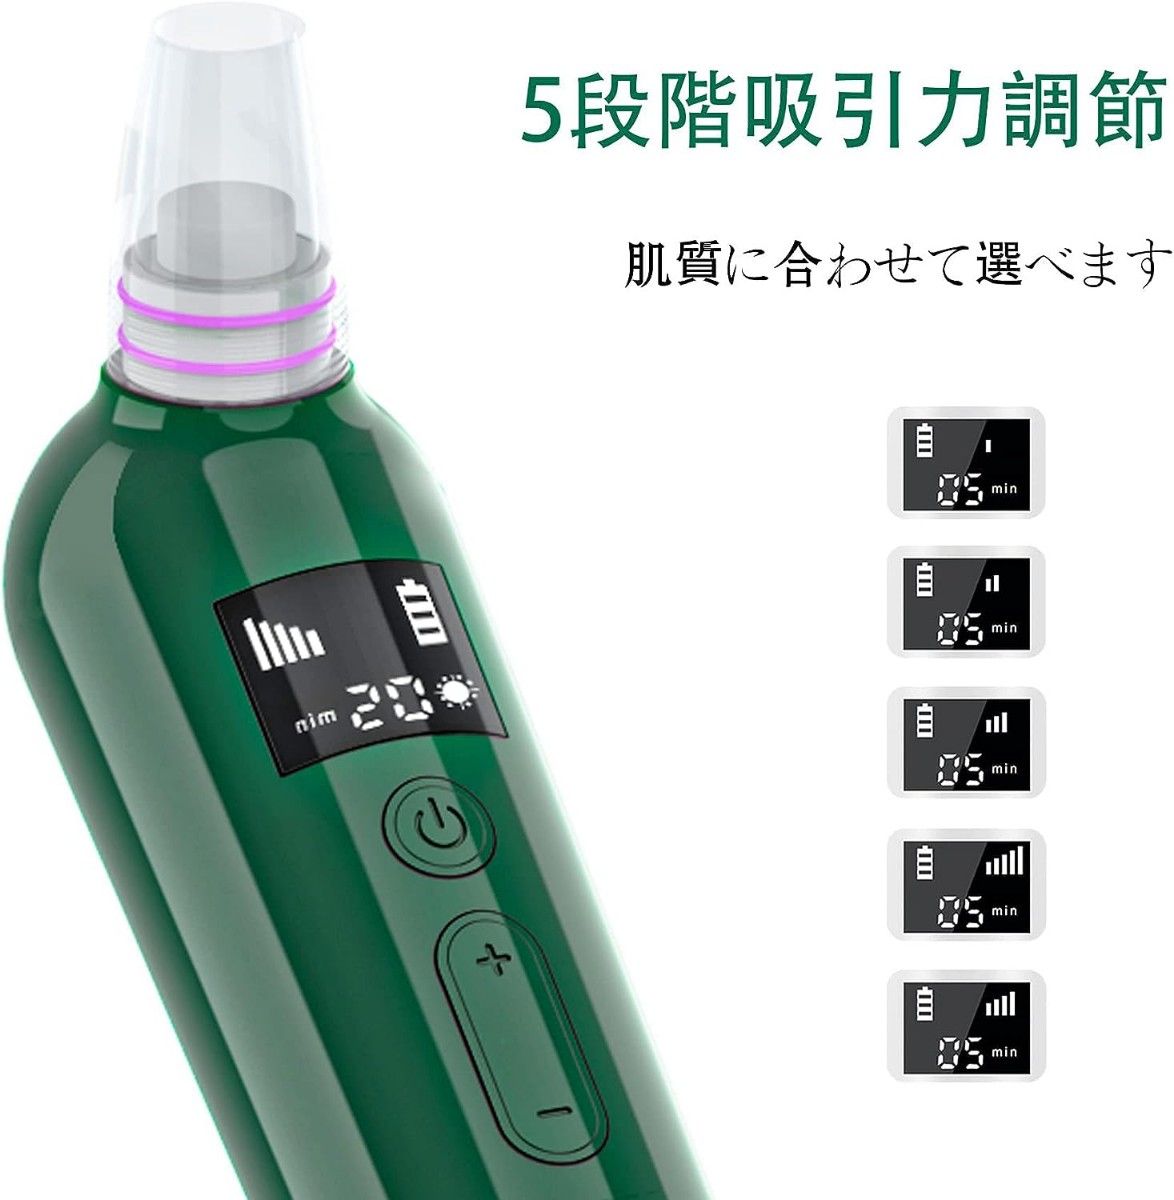 毛穴吸引器 美顔器 5階段吸引力 6種類の吸引ヘッド 充電式 LCD表示 日本語説明書付き 男女兼用 プレゼント 贈り物